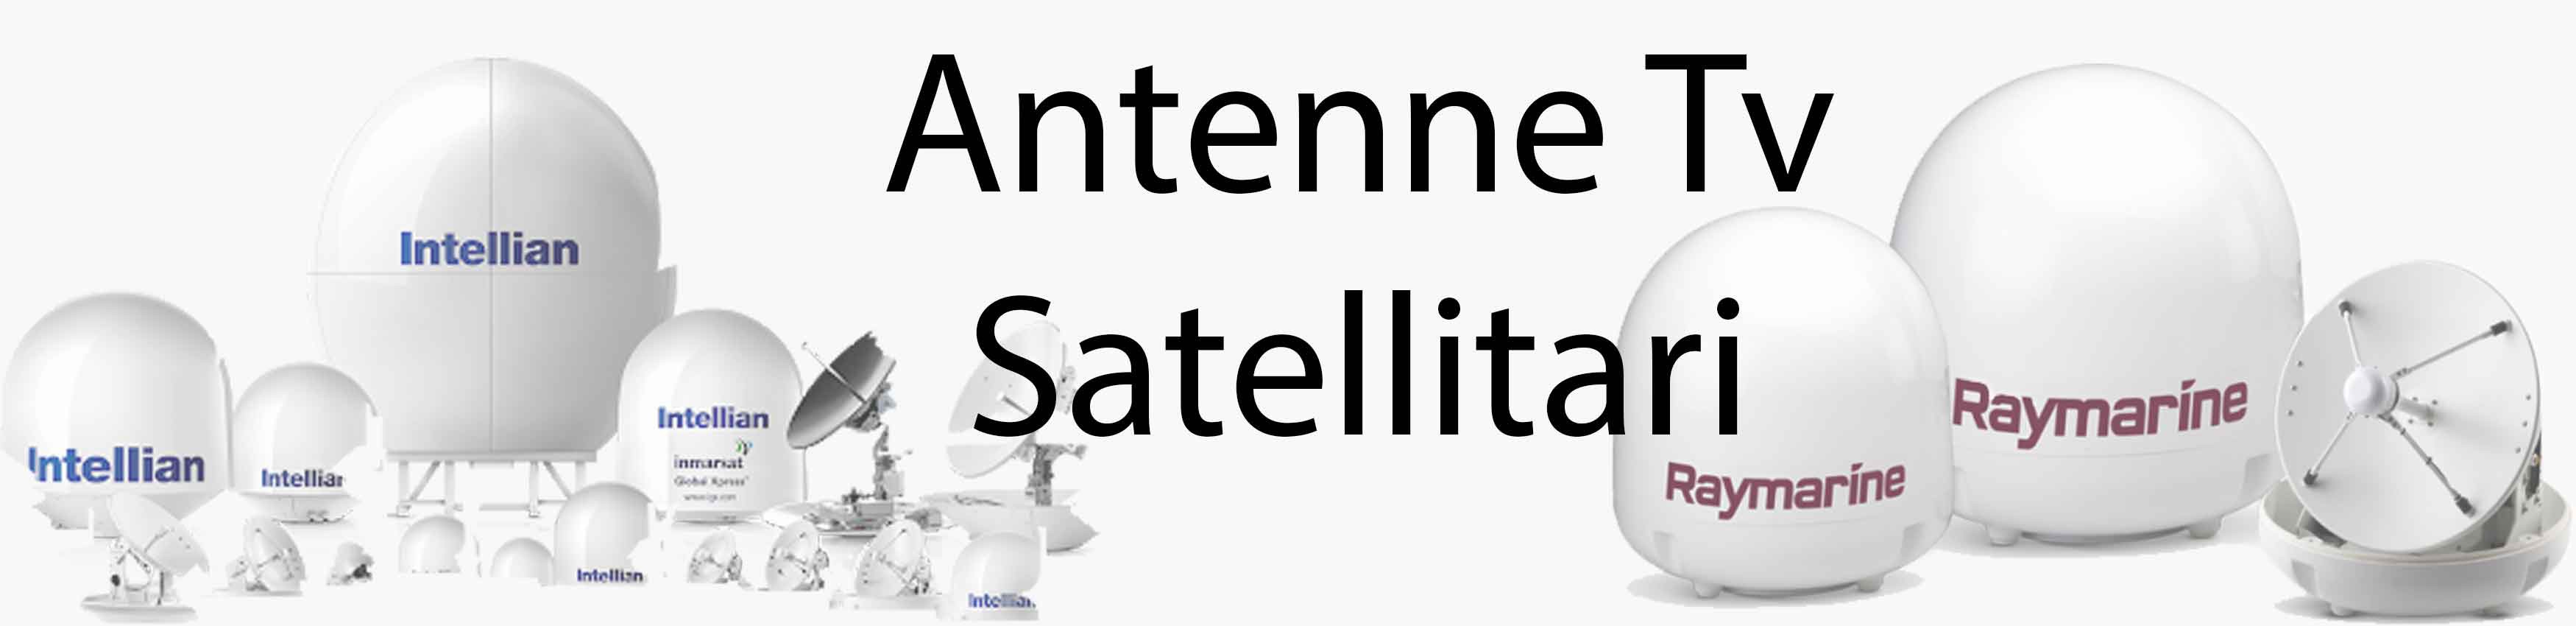 Antenne Tv Satellitari